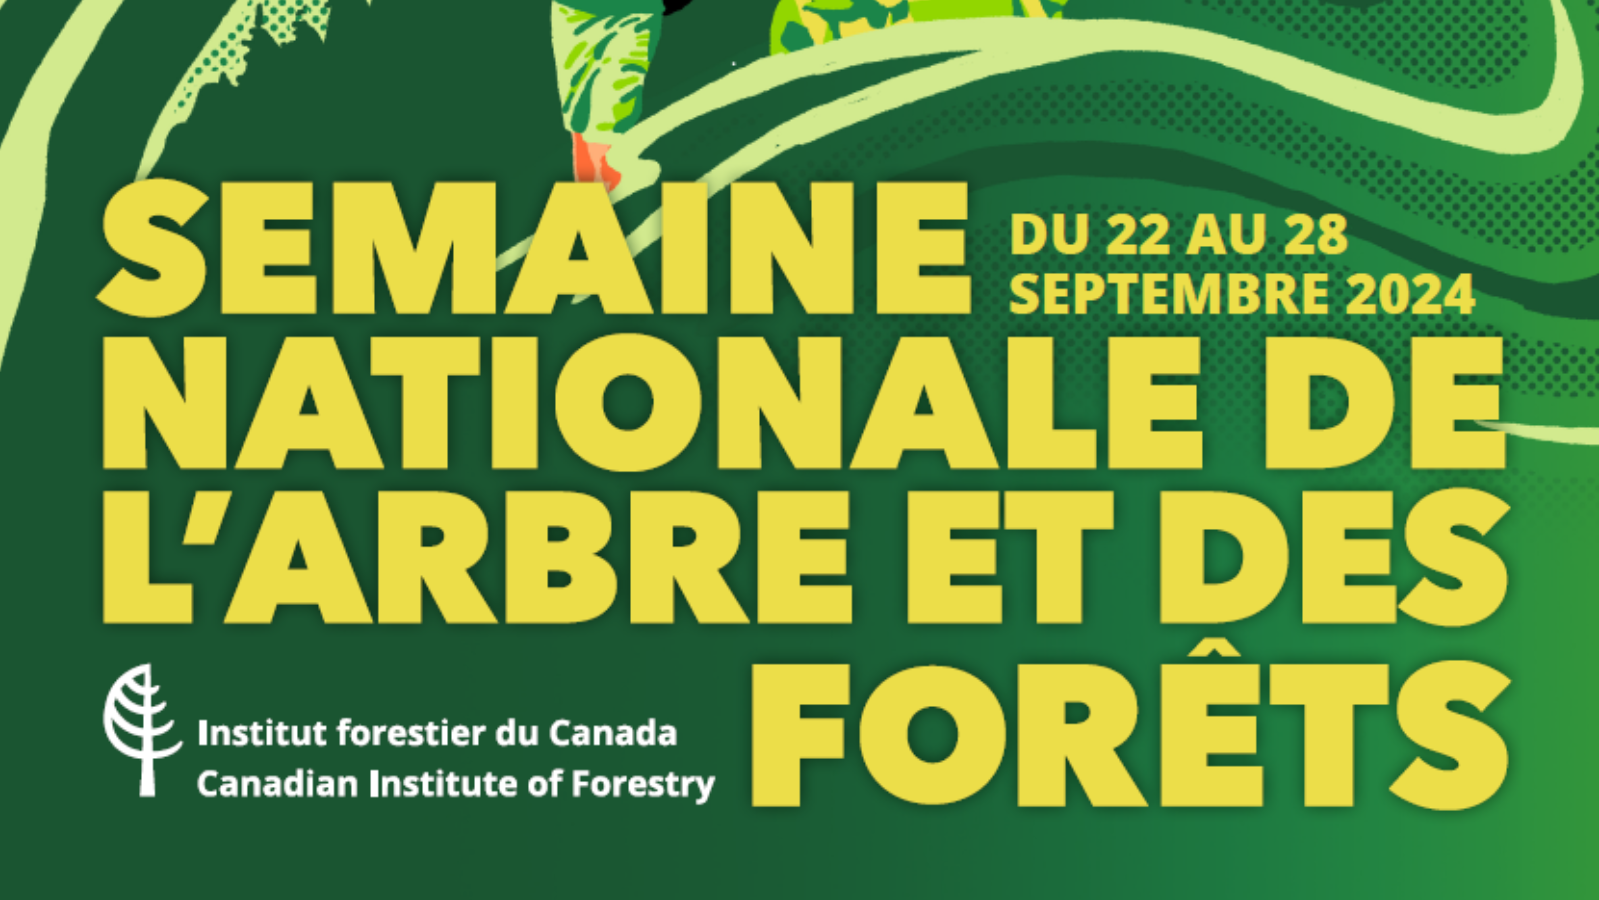 Semaine nationale de l’arbre et des forêts